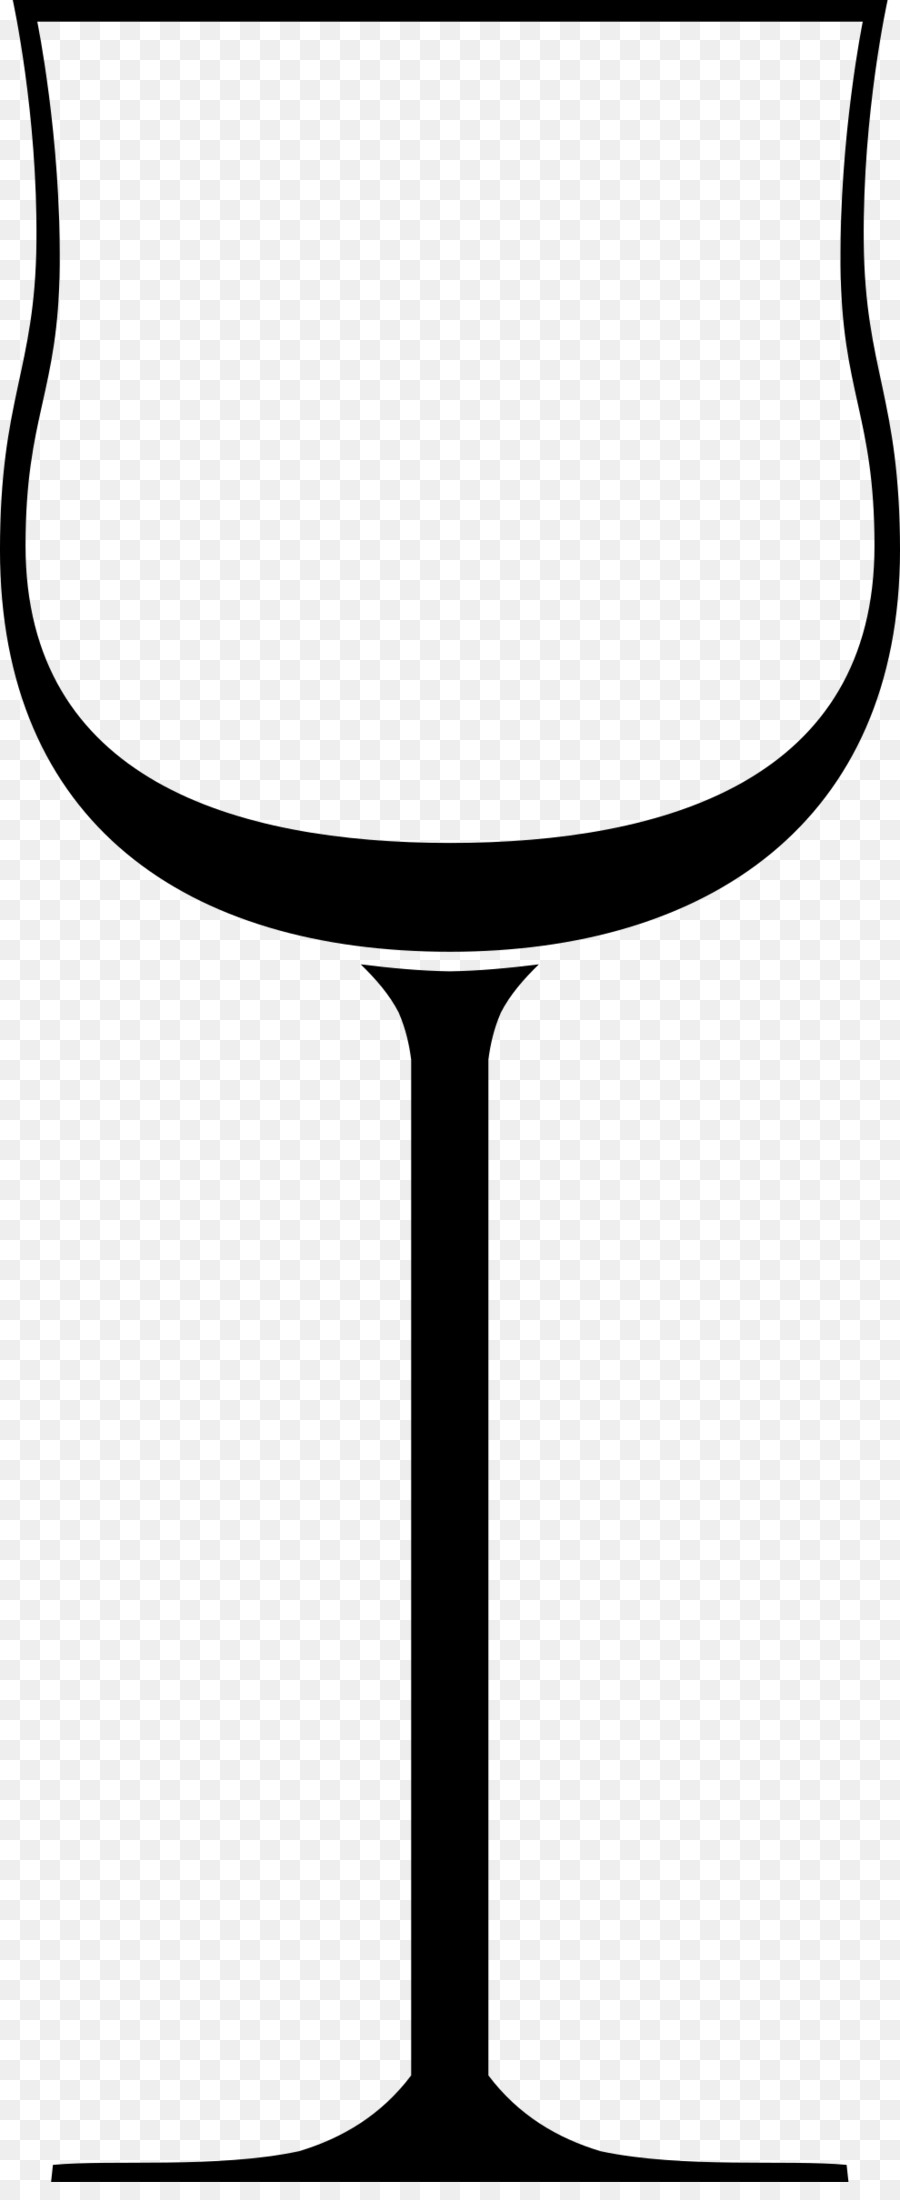 Vino bianco, bicchiere di Vino Clip art - bicchiere di vino